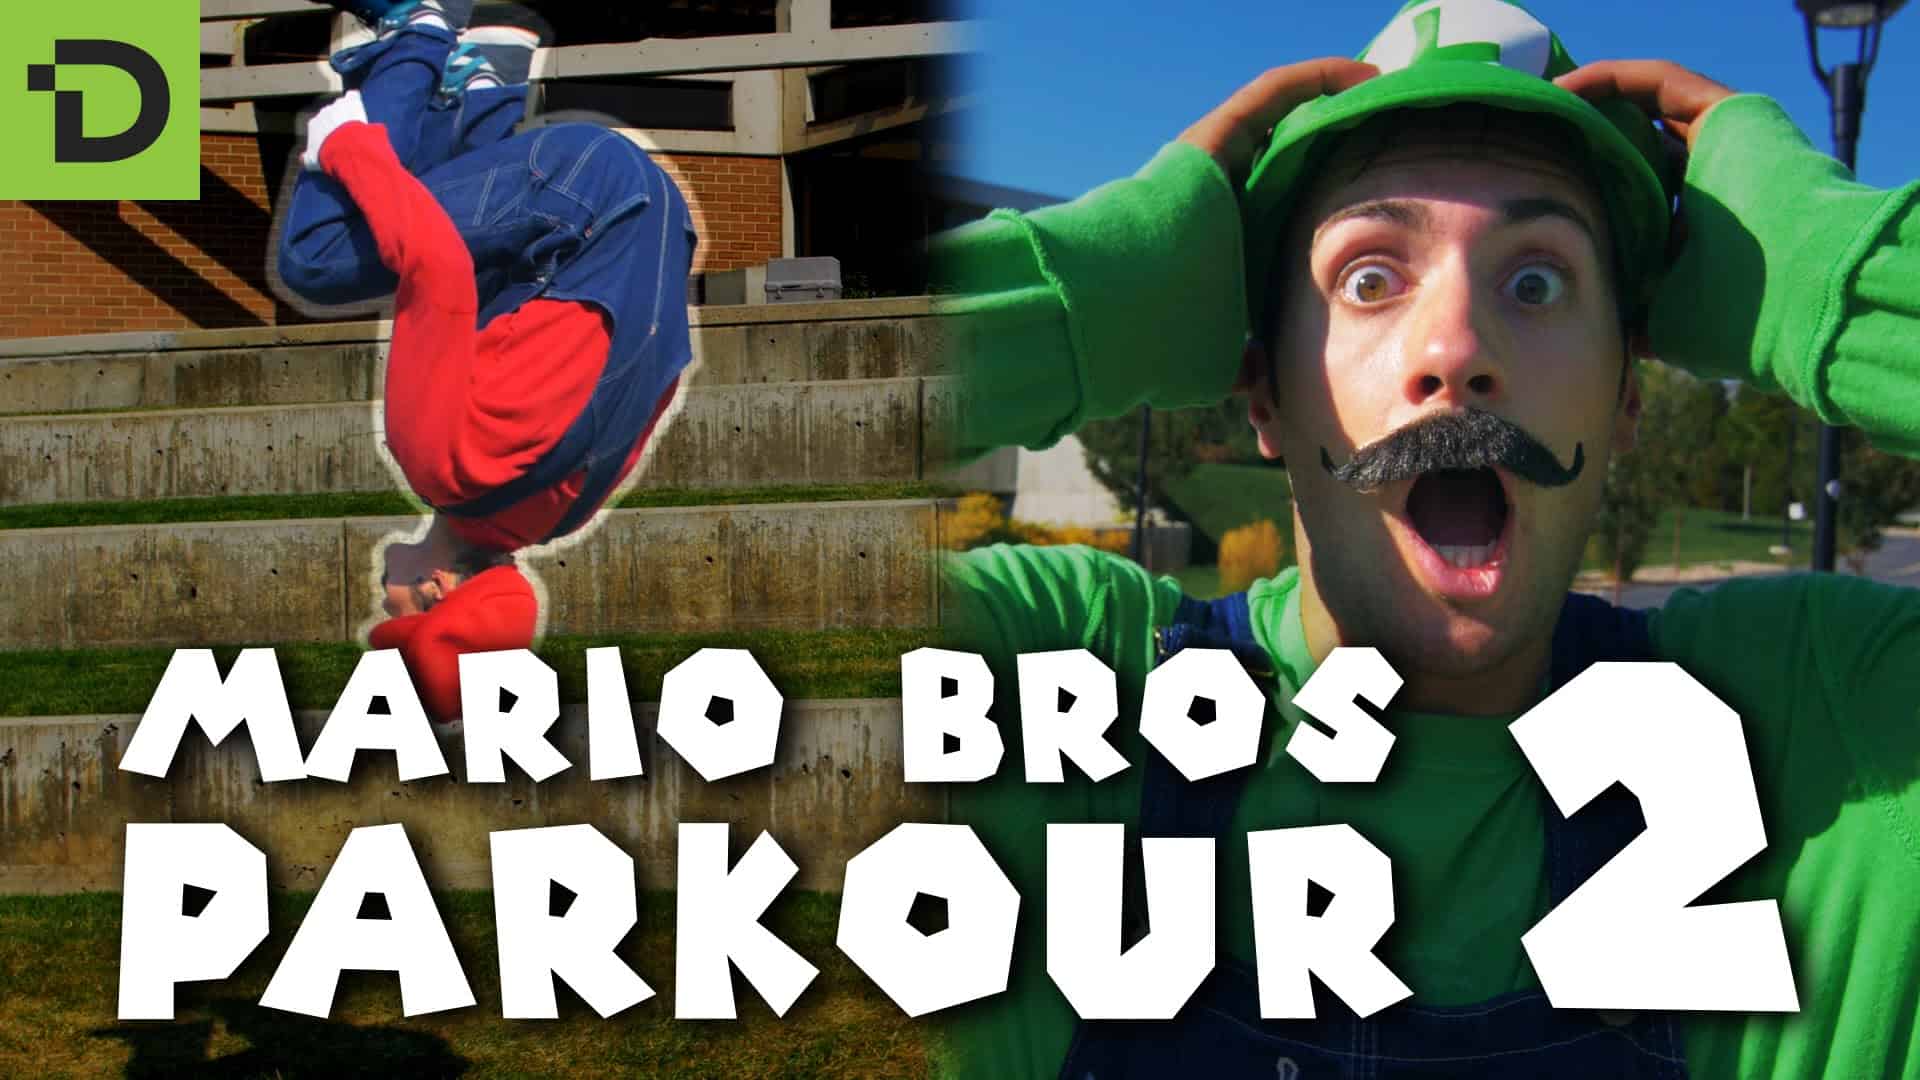 Super Mario Irmãos Parkour 2